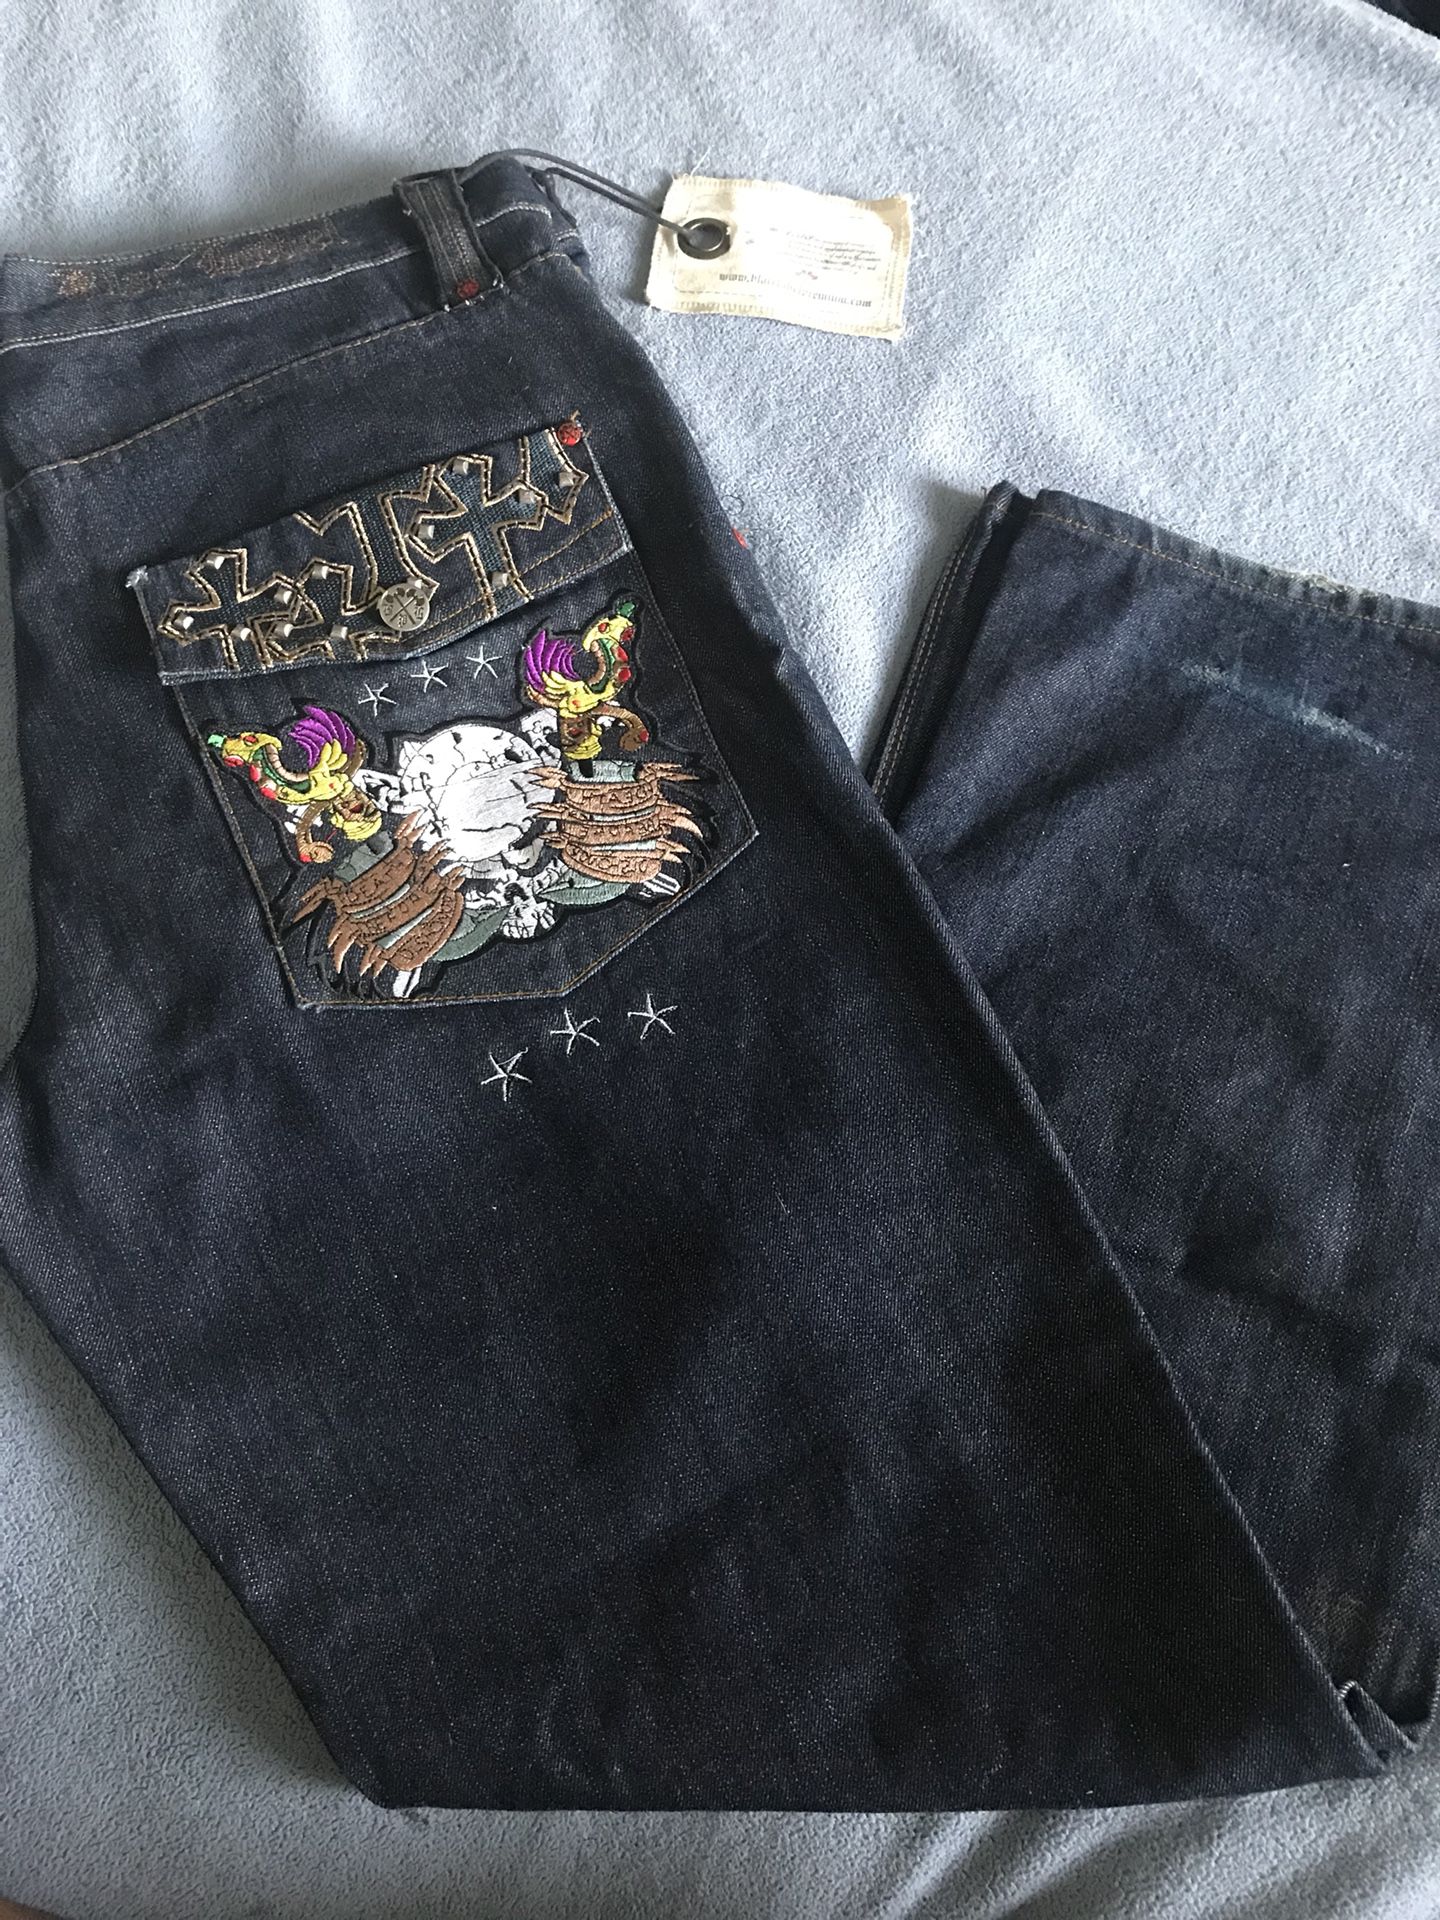 Men’s Black Label Blue Jeans. W40 L34.